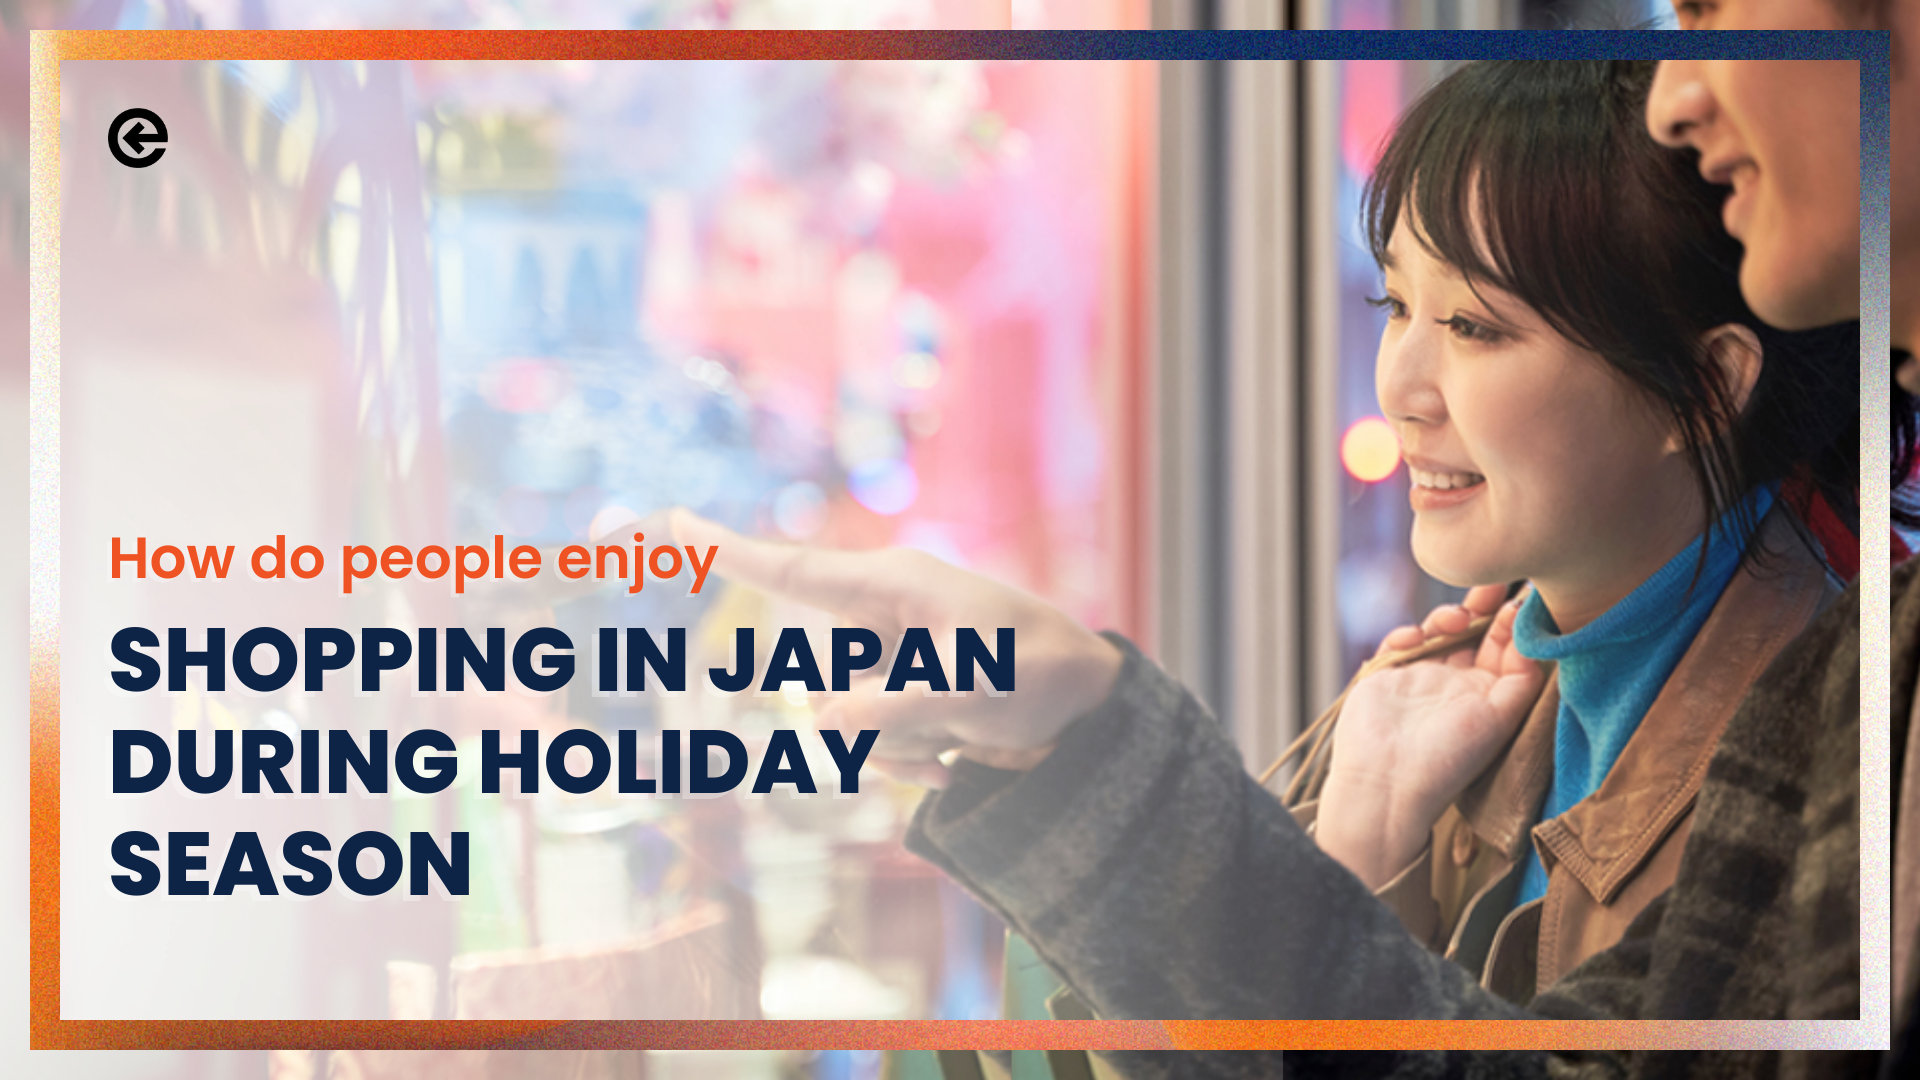 在日本，人们如何享受假日季节的购物？